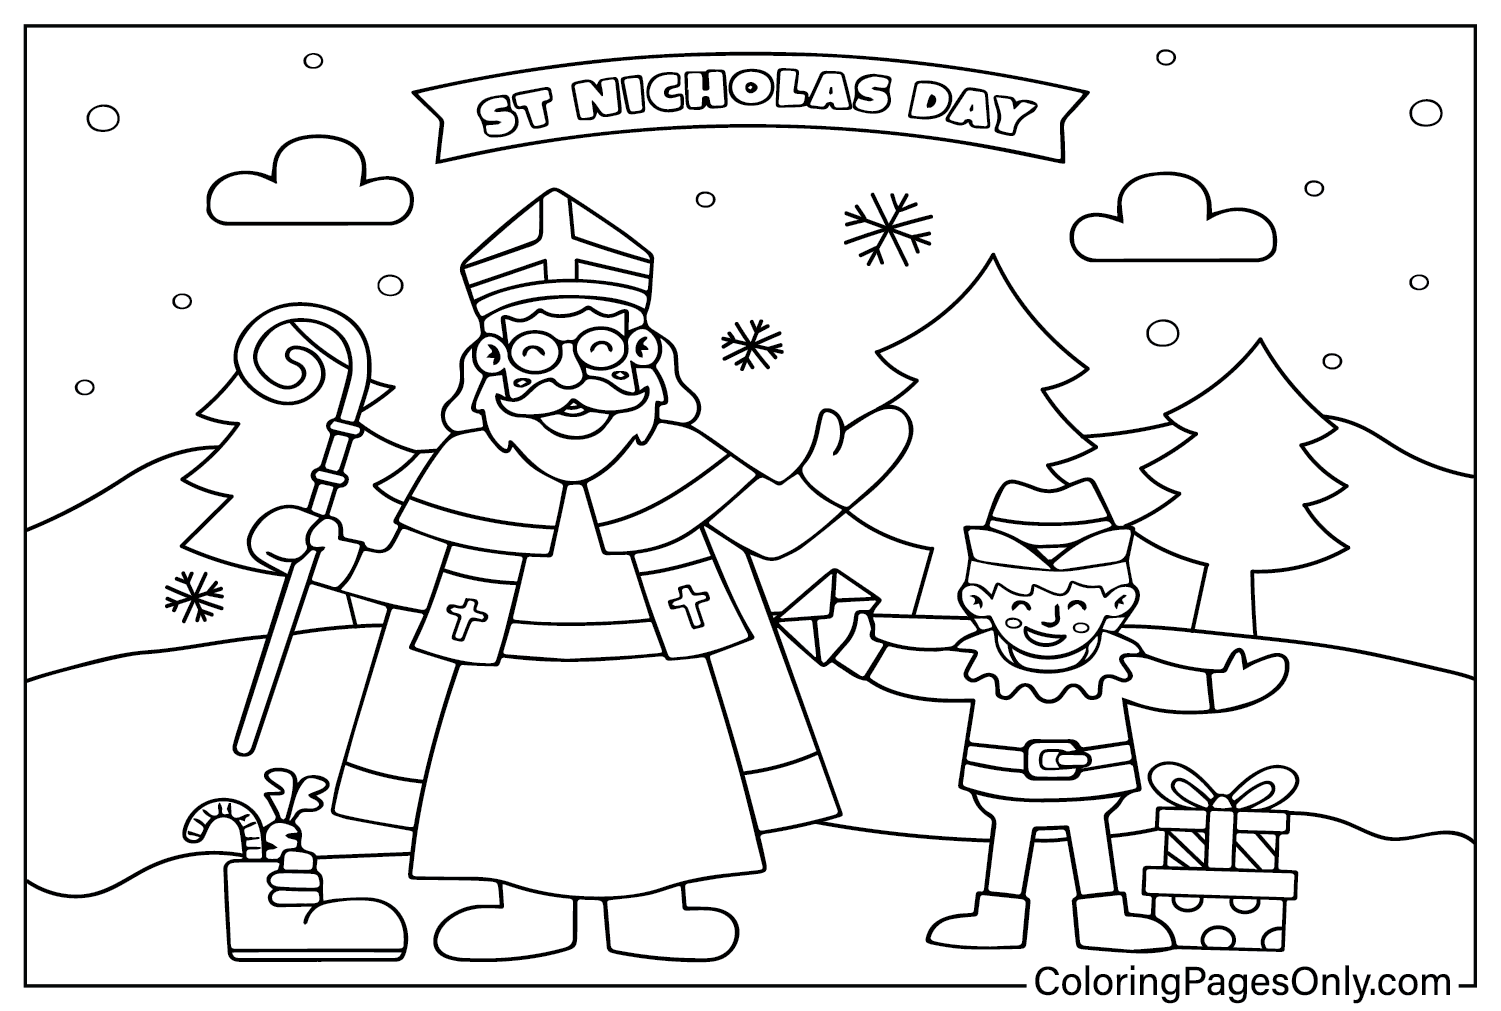 Página para colorir do Dia de São Nicolau para impressão do Dia de São Nicolau